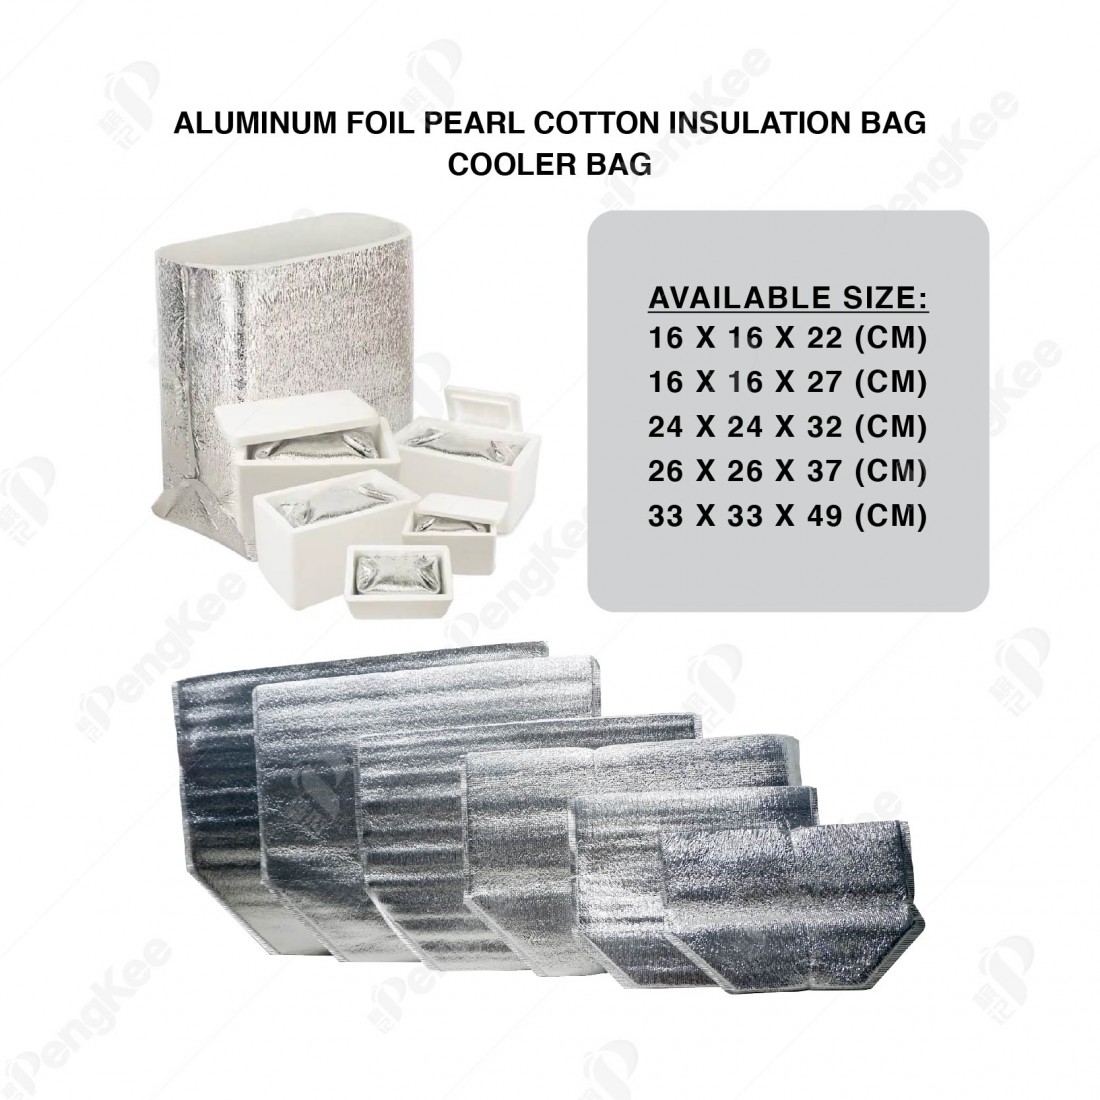 ALUMINUM FOIL PEARL COTTON INSULATION BAG (L33 * W33 * H49CM +3MM) 铝箱珍珠保温袋 (20'S)